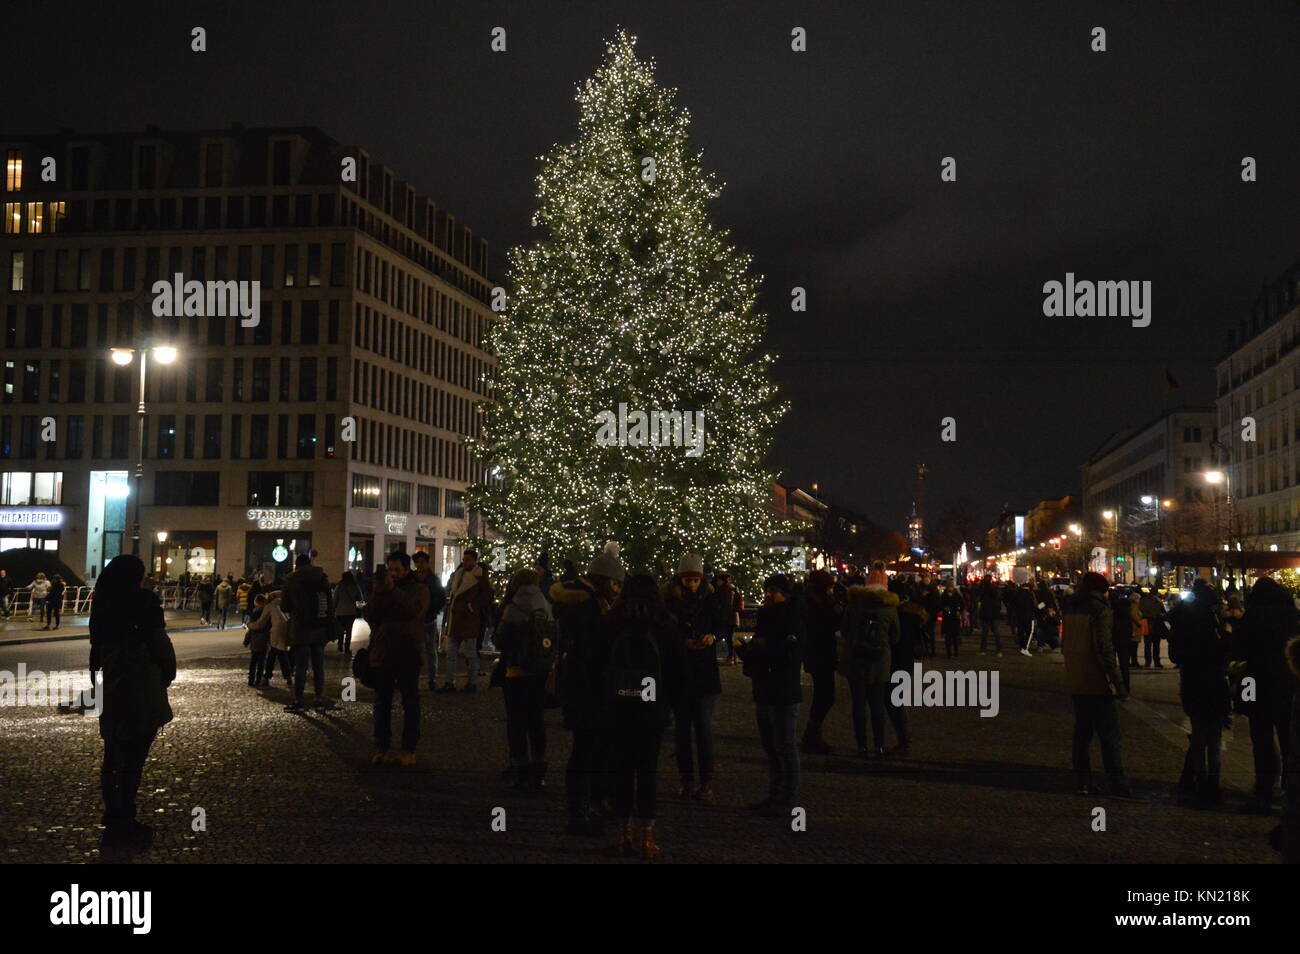 Berlin, Deutschland. 09 Dez, 2017. Weihnachtsbaum am Pariser Platz vor dem Brandenburger Tor in Berlin Credit: Markku Rainer Peltonen/Alamy leben Nachrichten Stockfoto